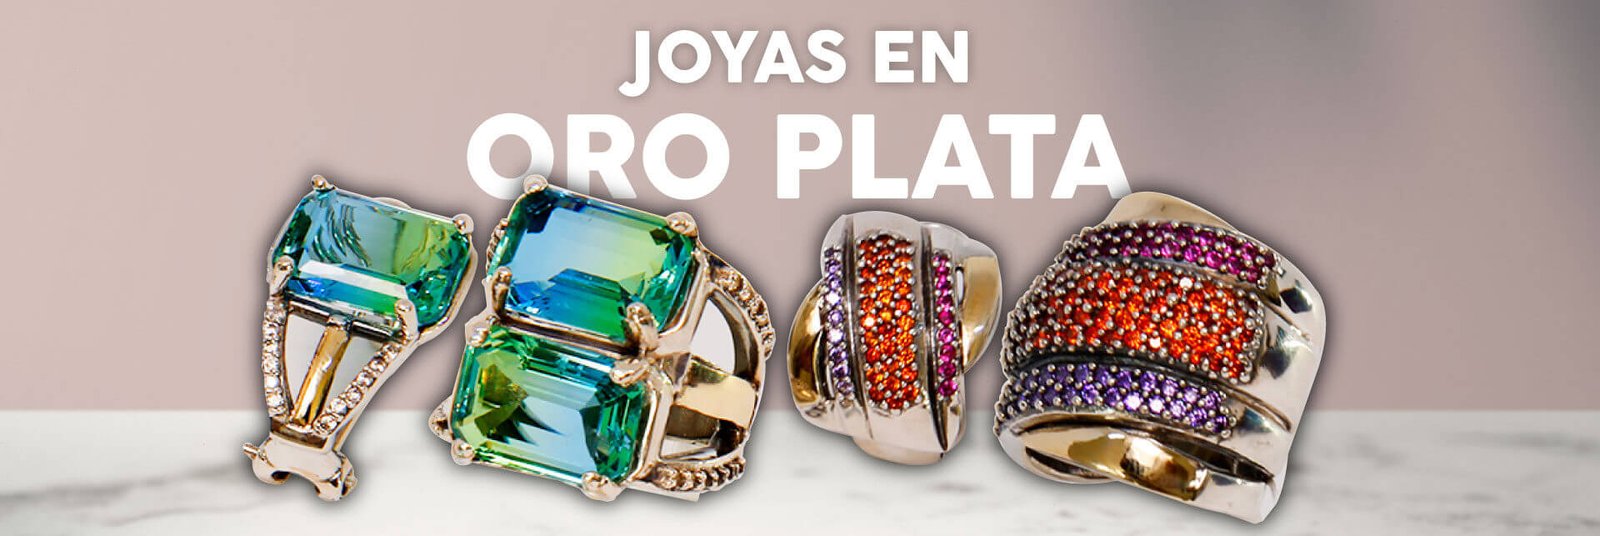 joyas oro plata en Estados Unidos - JOYAS ORO PLATA POR MAYOR - Fabricantes de joyas por mayor, anillos, pulseras, dijes. Joyas por mayor. Fábrica de en oro y plata.